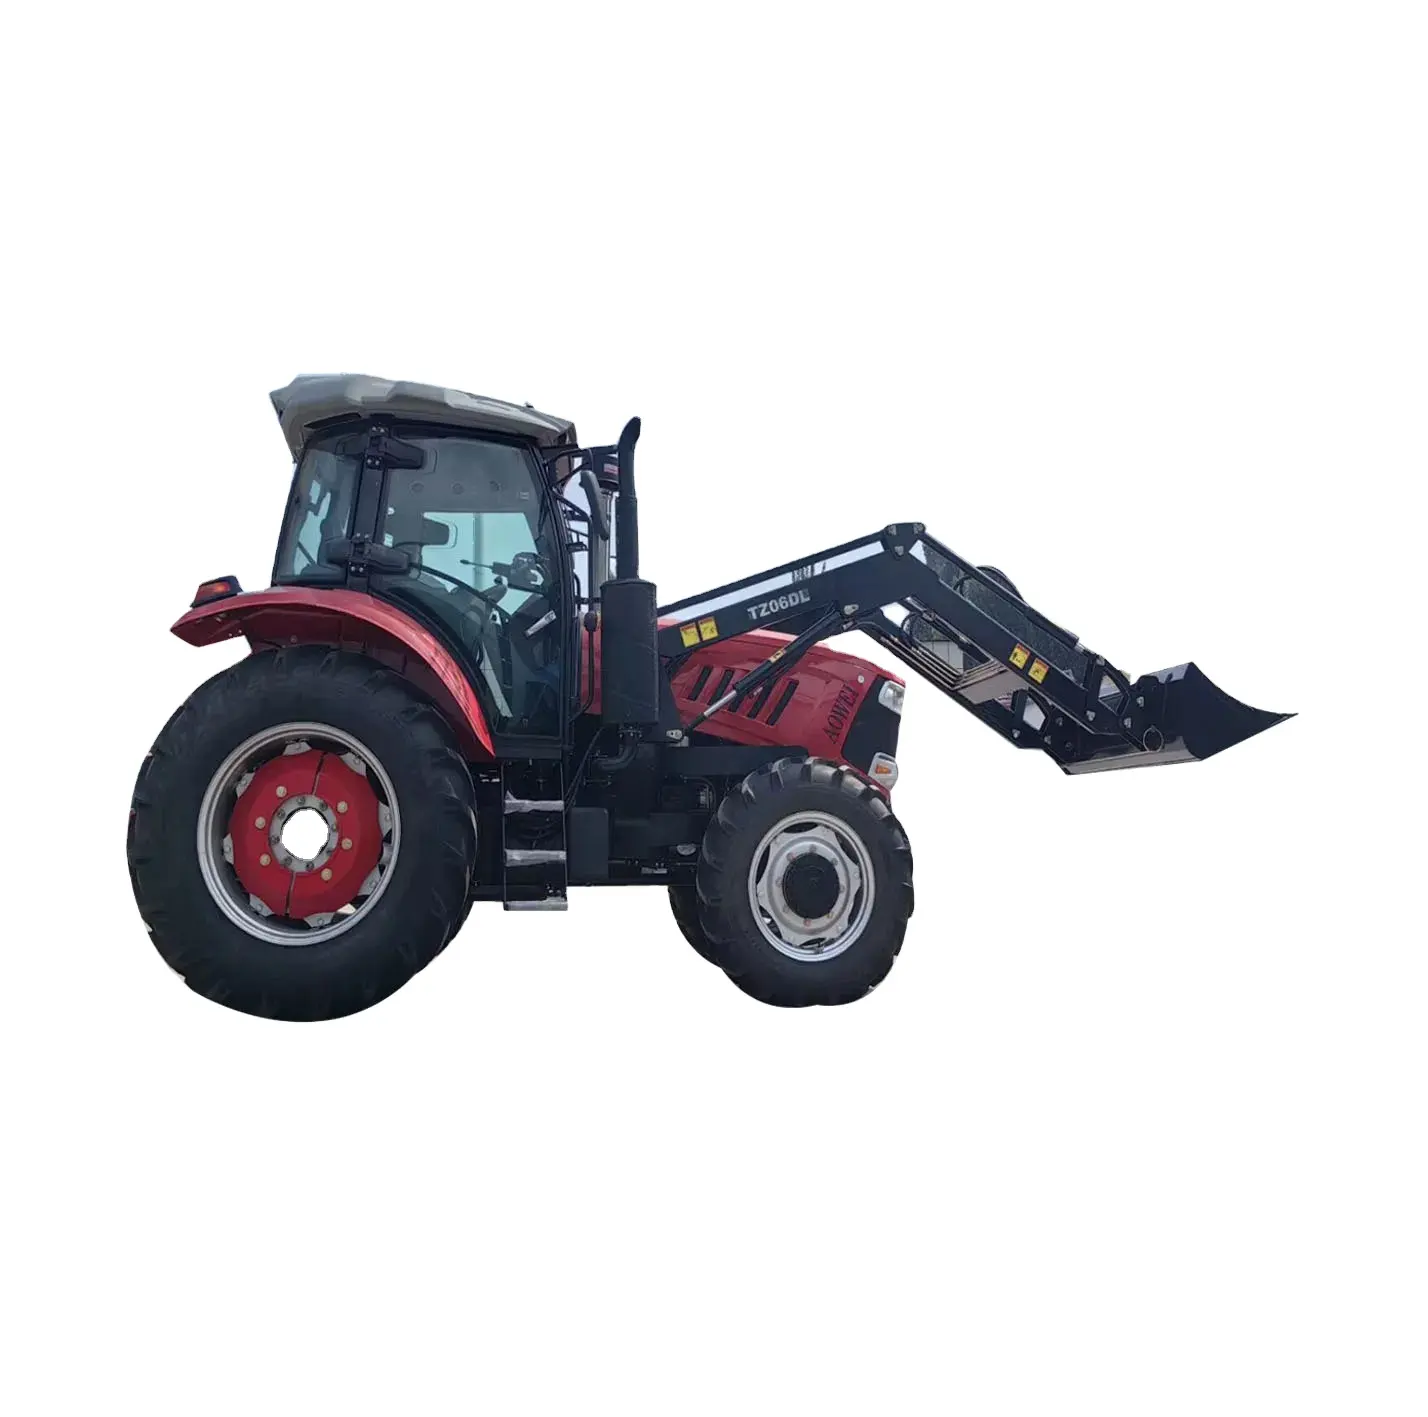 Chinesische 4WD 140 PS mit großem Reifen und Frontlader Landwirtschaft Landwirtschaft Traktor mit Land maschinen Ausrüstung